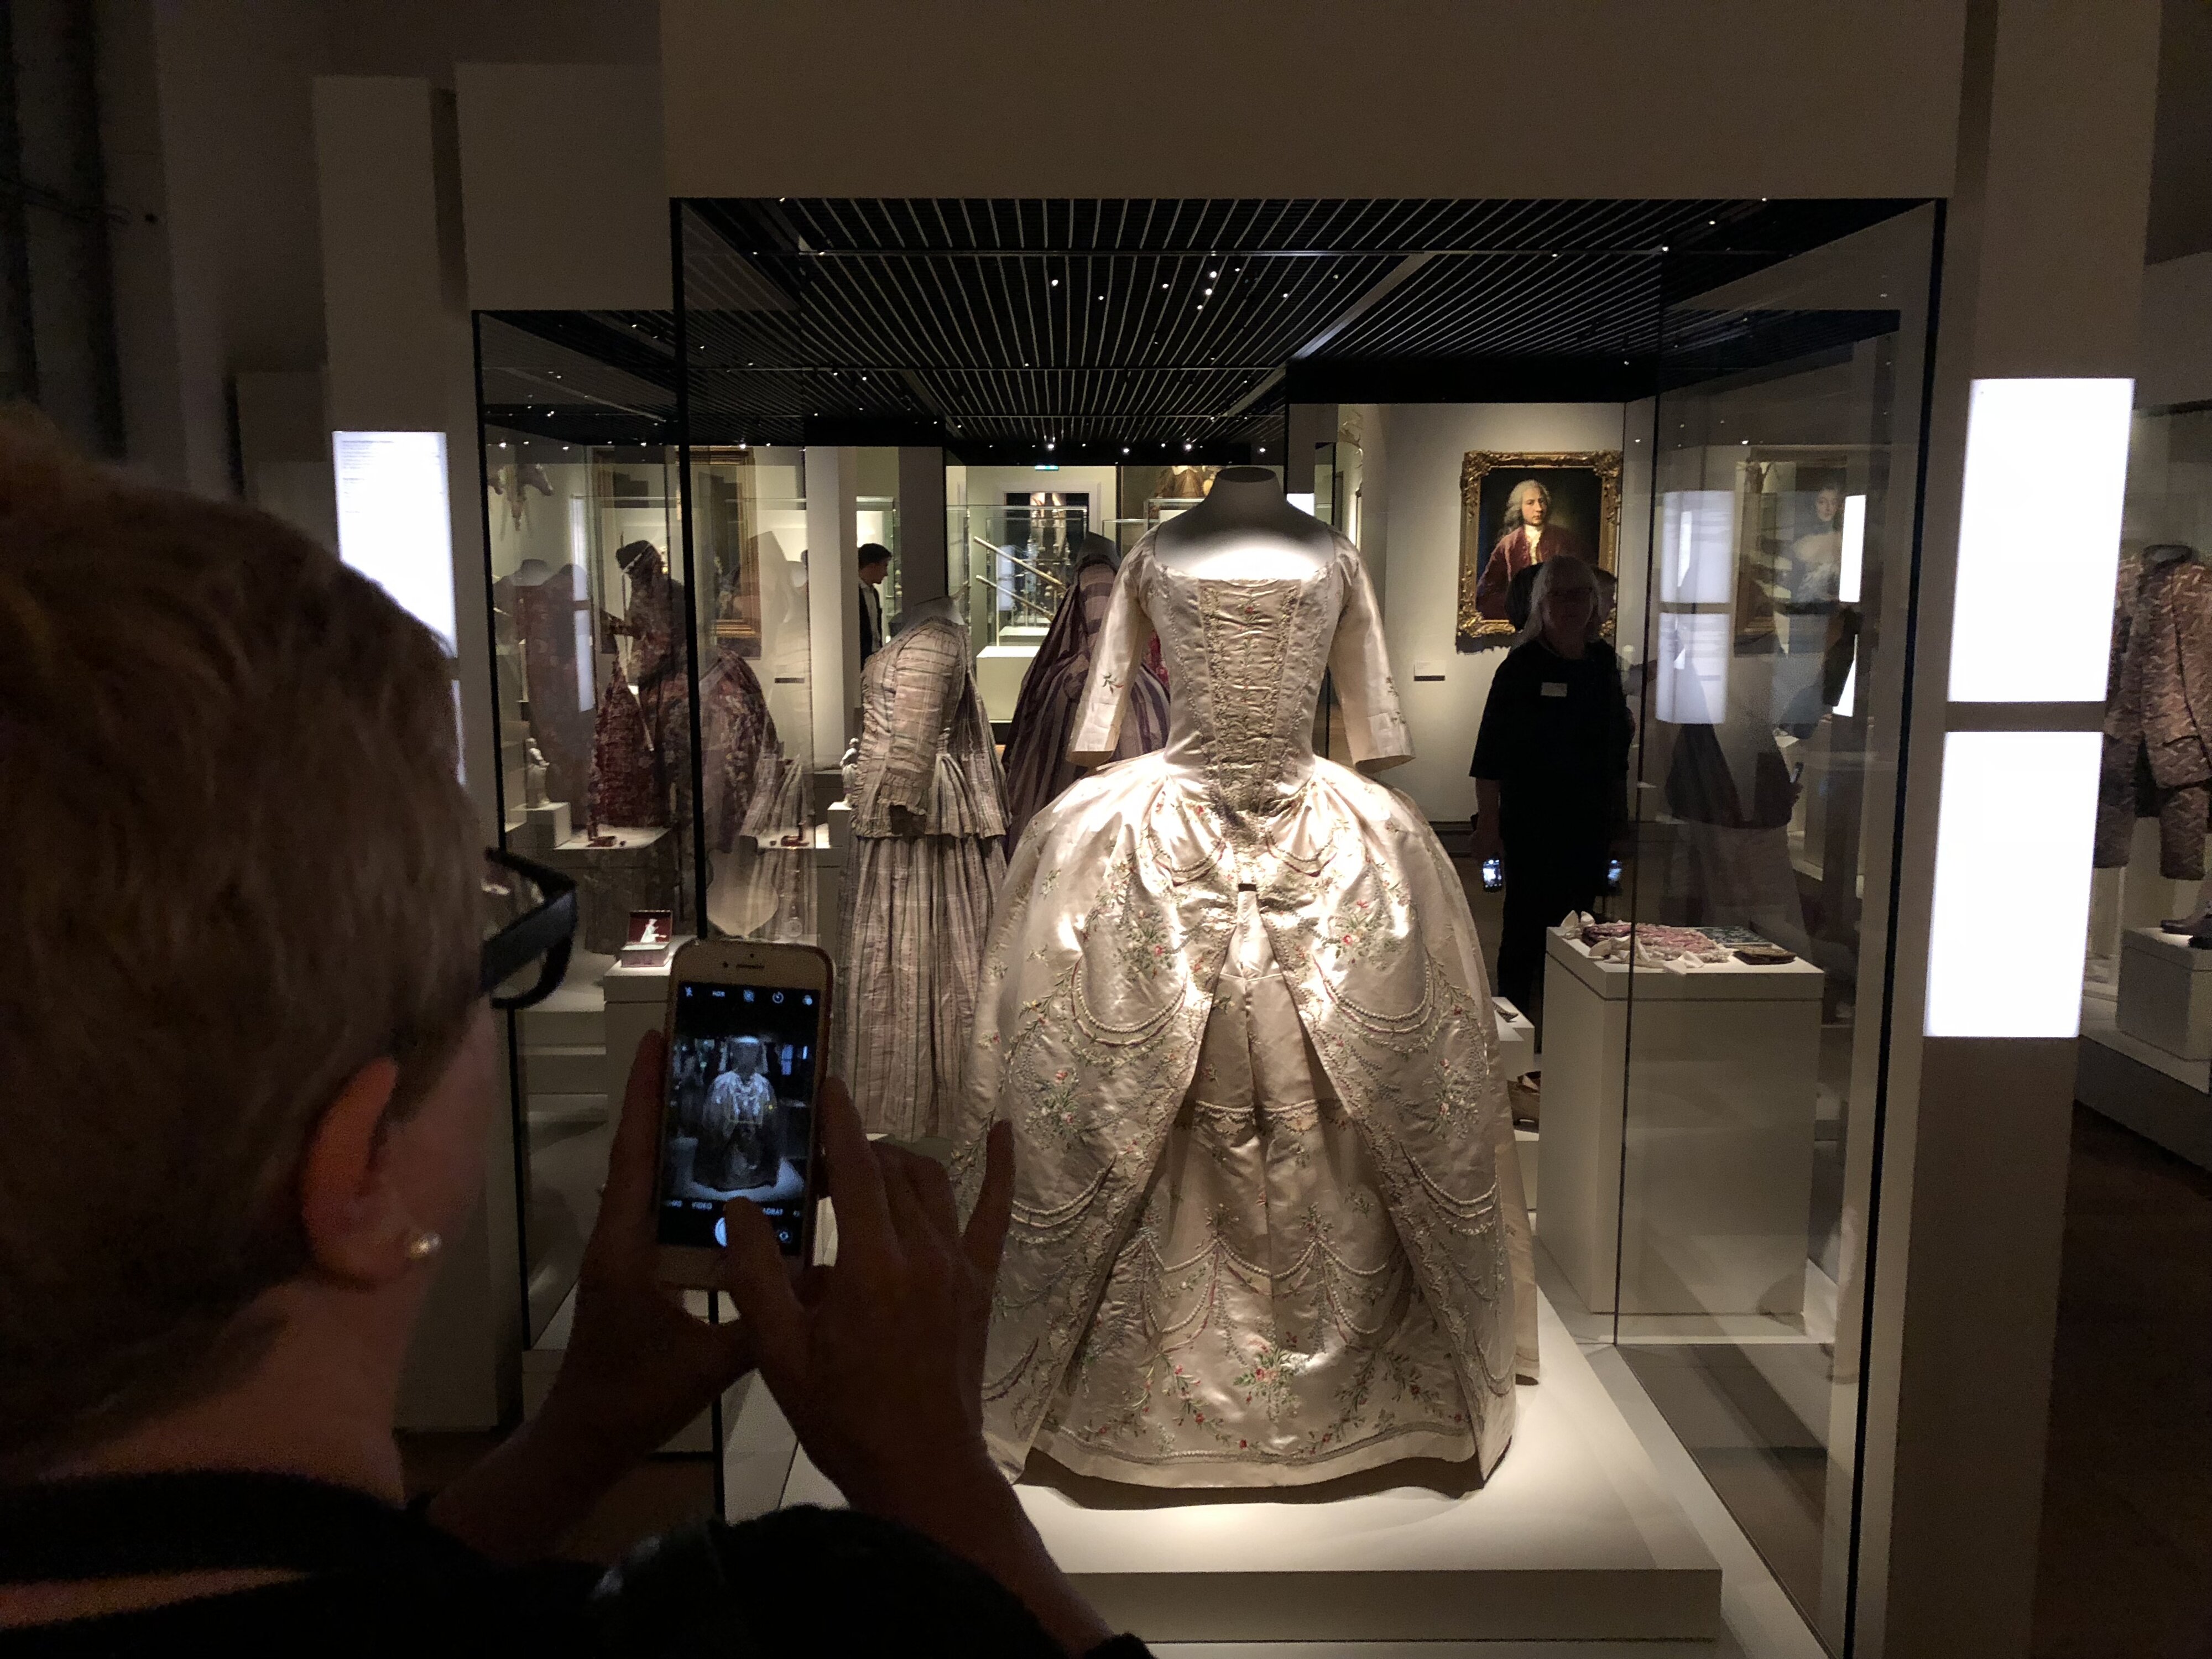 BloggerWalk #BarockerLuxus im Bayerischen Nationalmuseum: Luxus, Lifestyle & Sammellust im 18. Jahrhundert